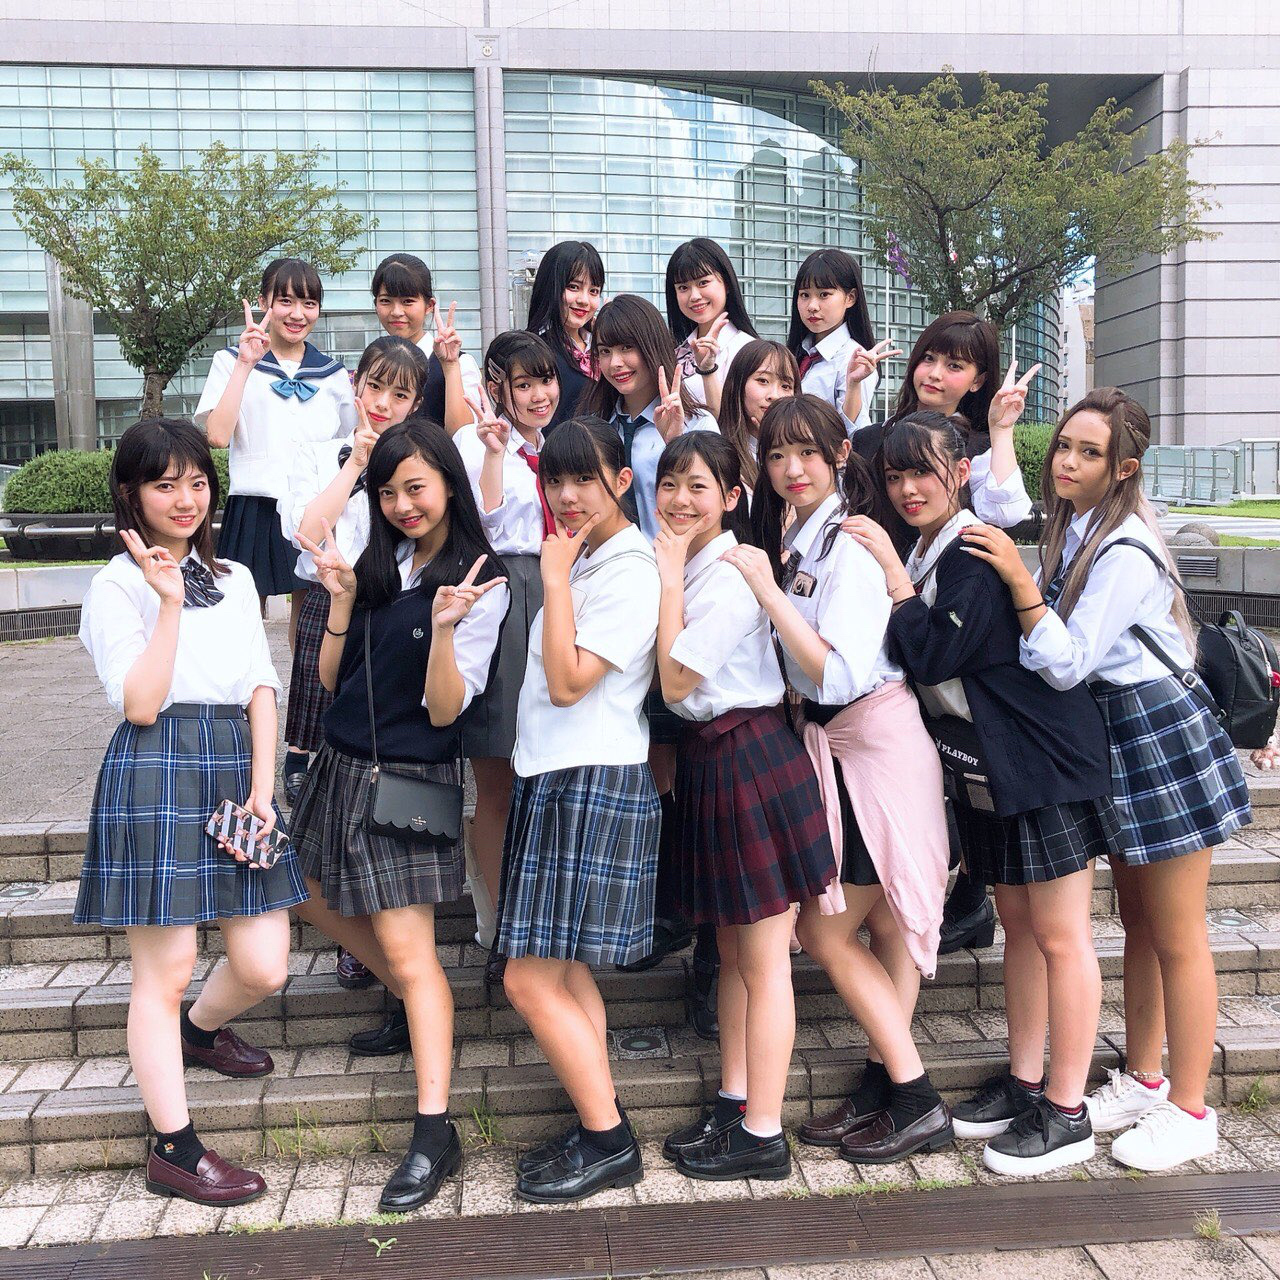 日本一かわいい女子高生 を決定するコンテスト 女子高生ミスコン19 ファイナリスト暫定10名が決定 株式会社エイチジェイ